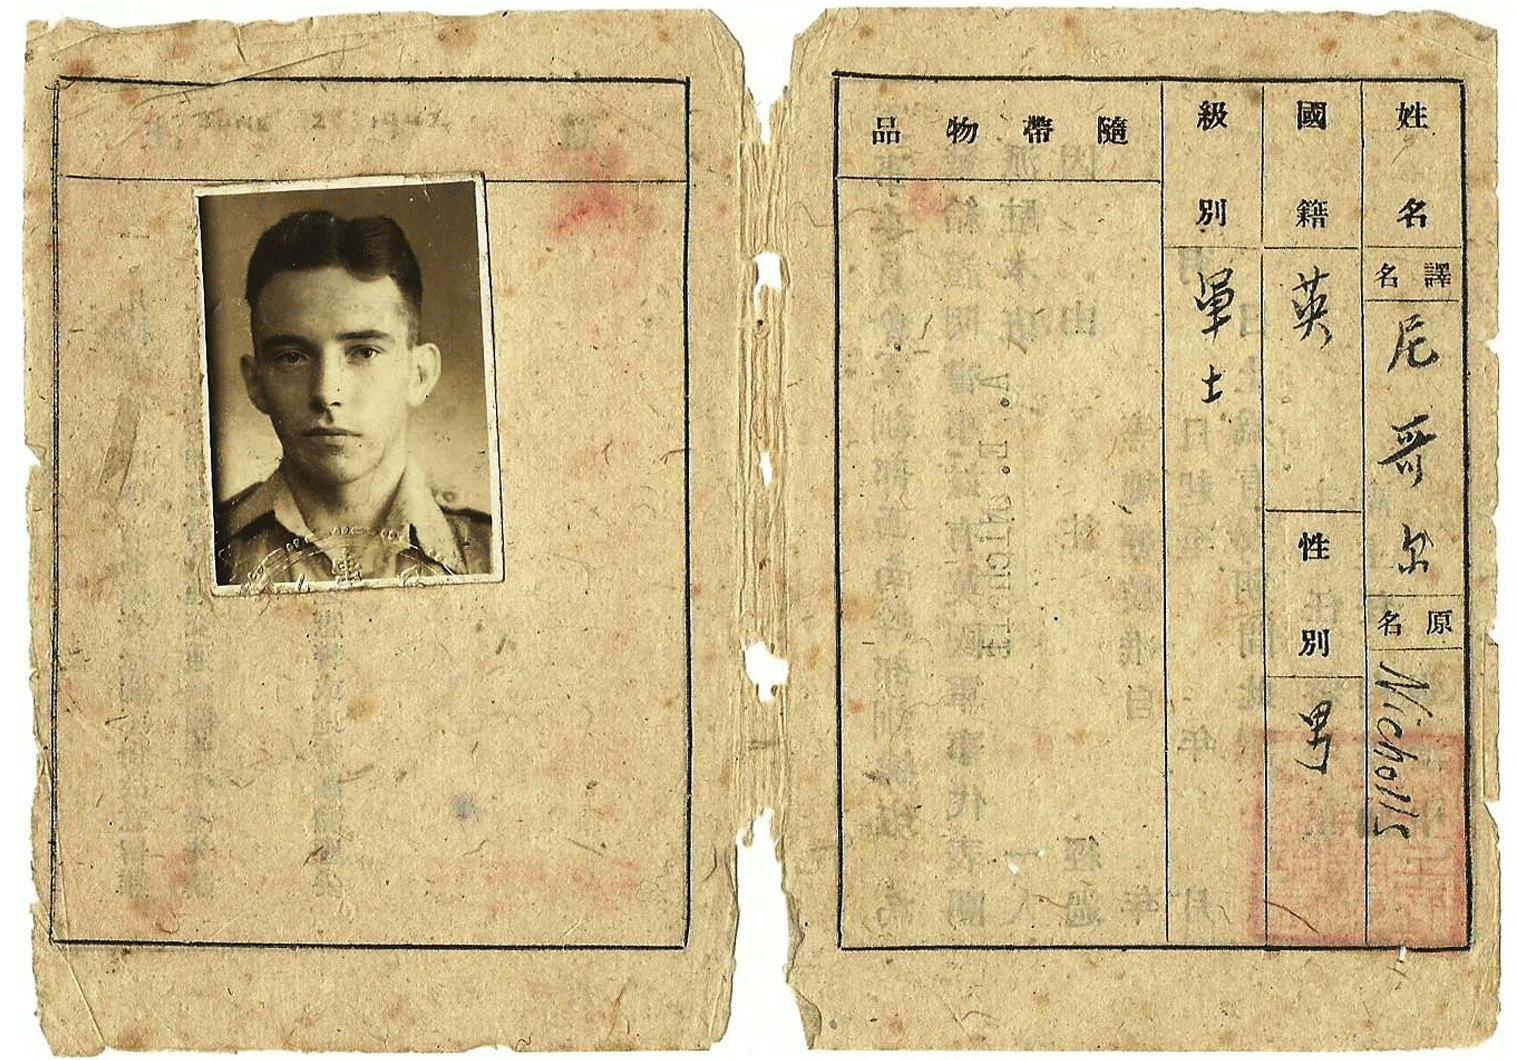 WW2 CBI document from 1942